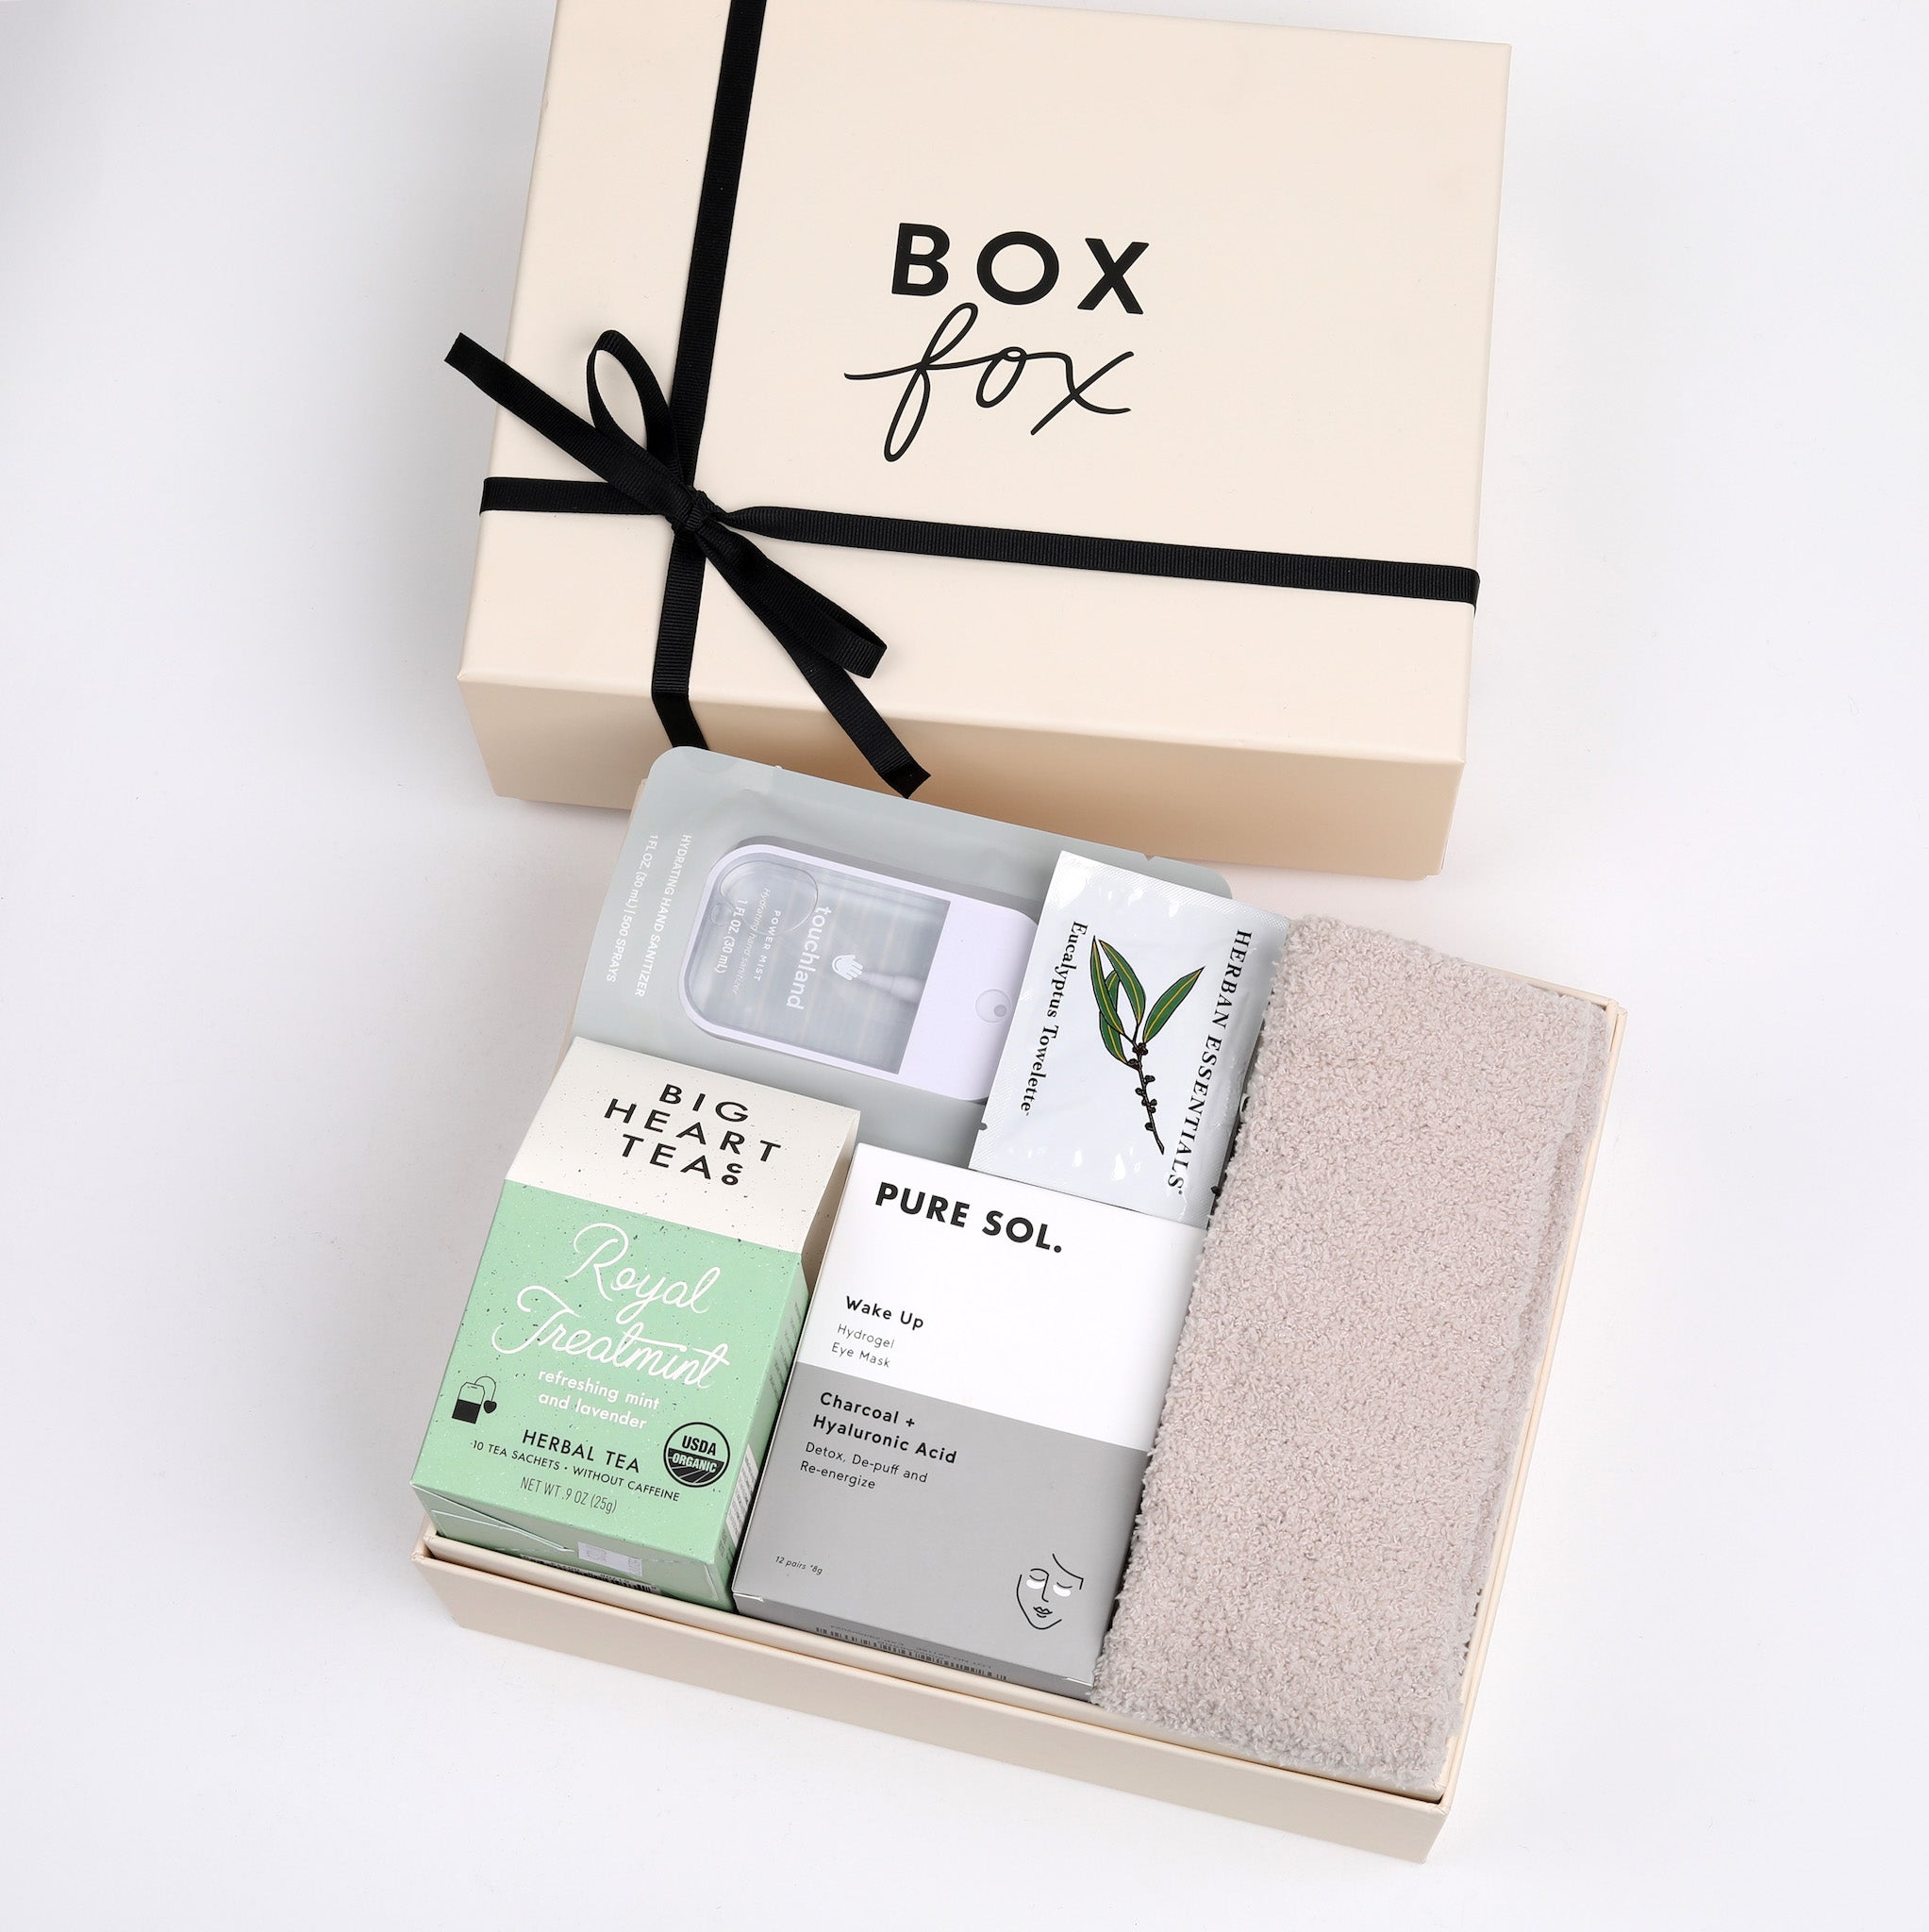 boxbox - boxbox refreshes